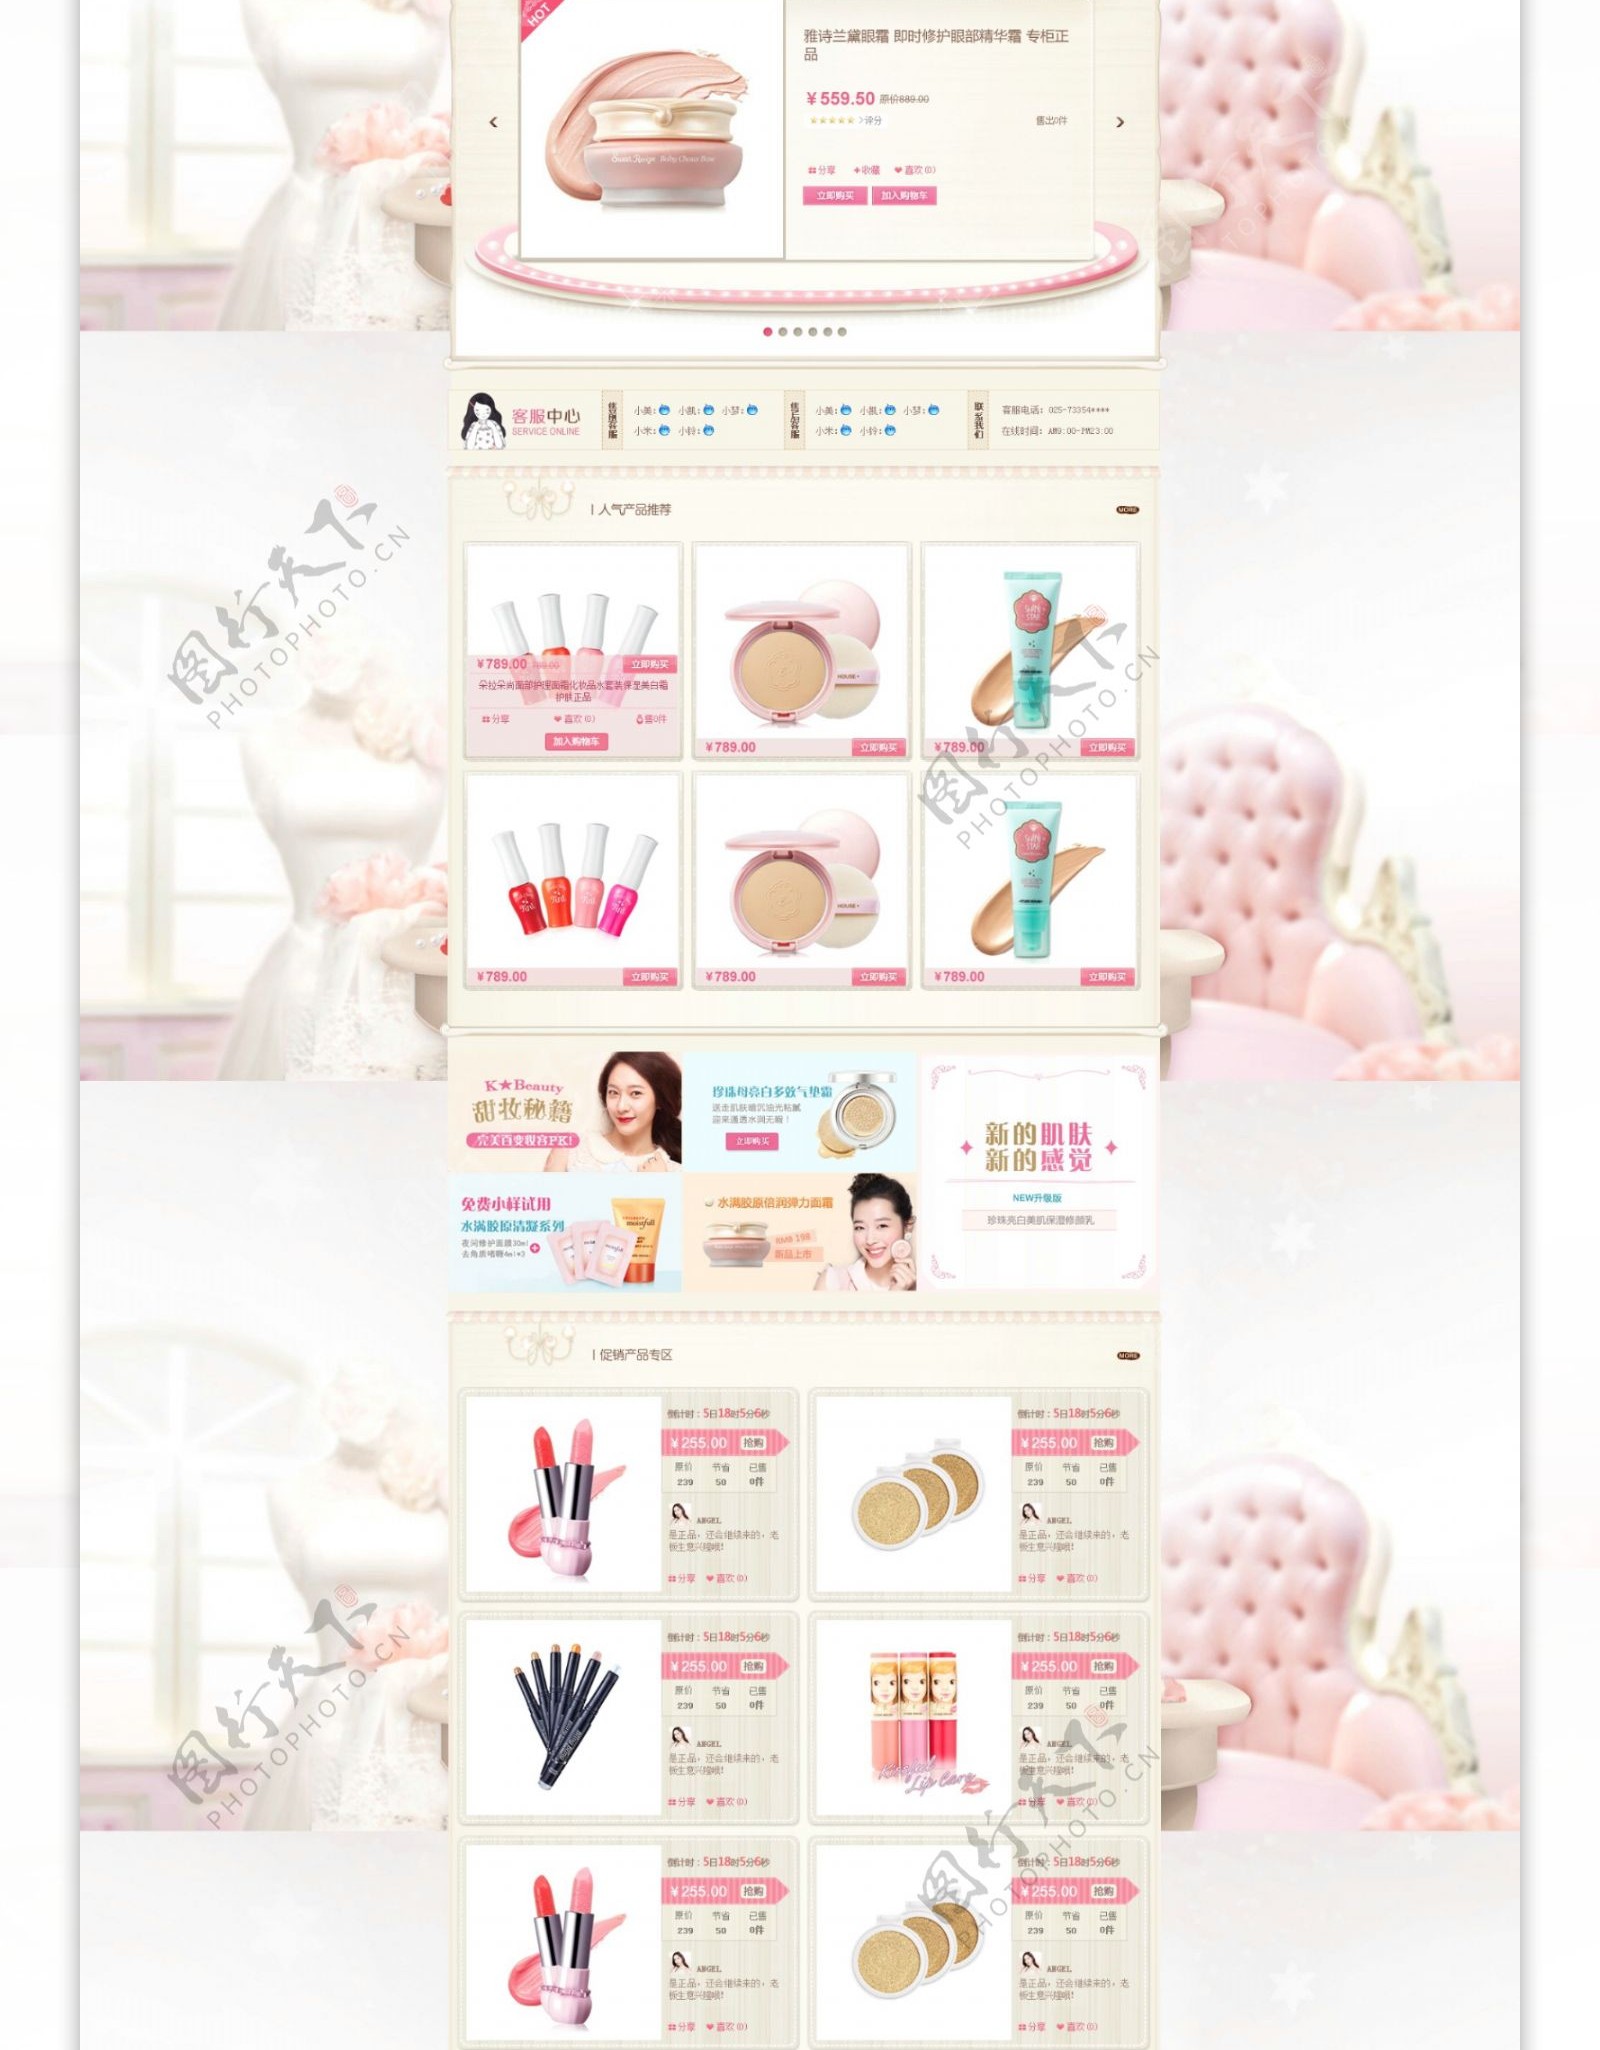 淘宝化妆品促销页面设计PSD素材